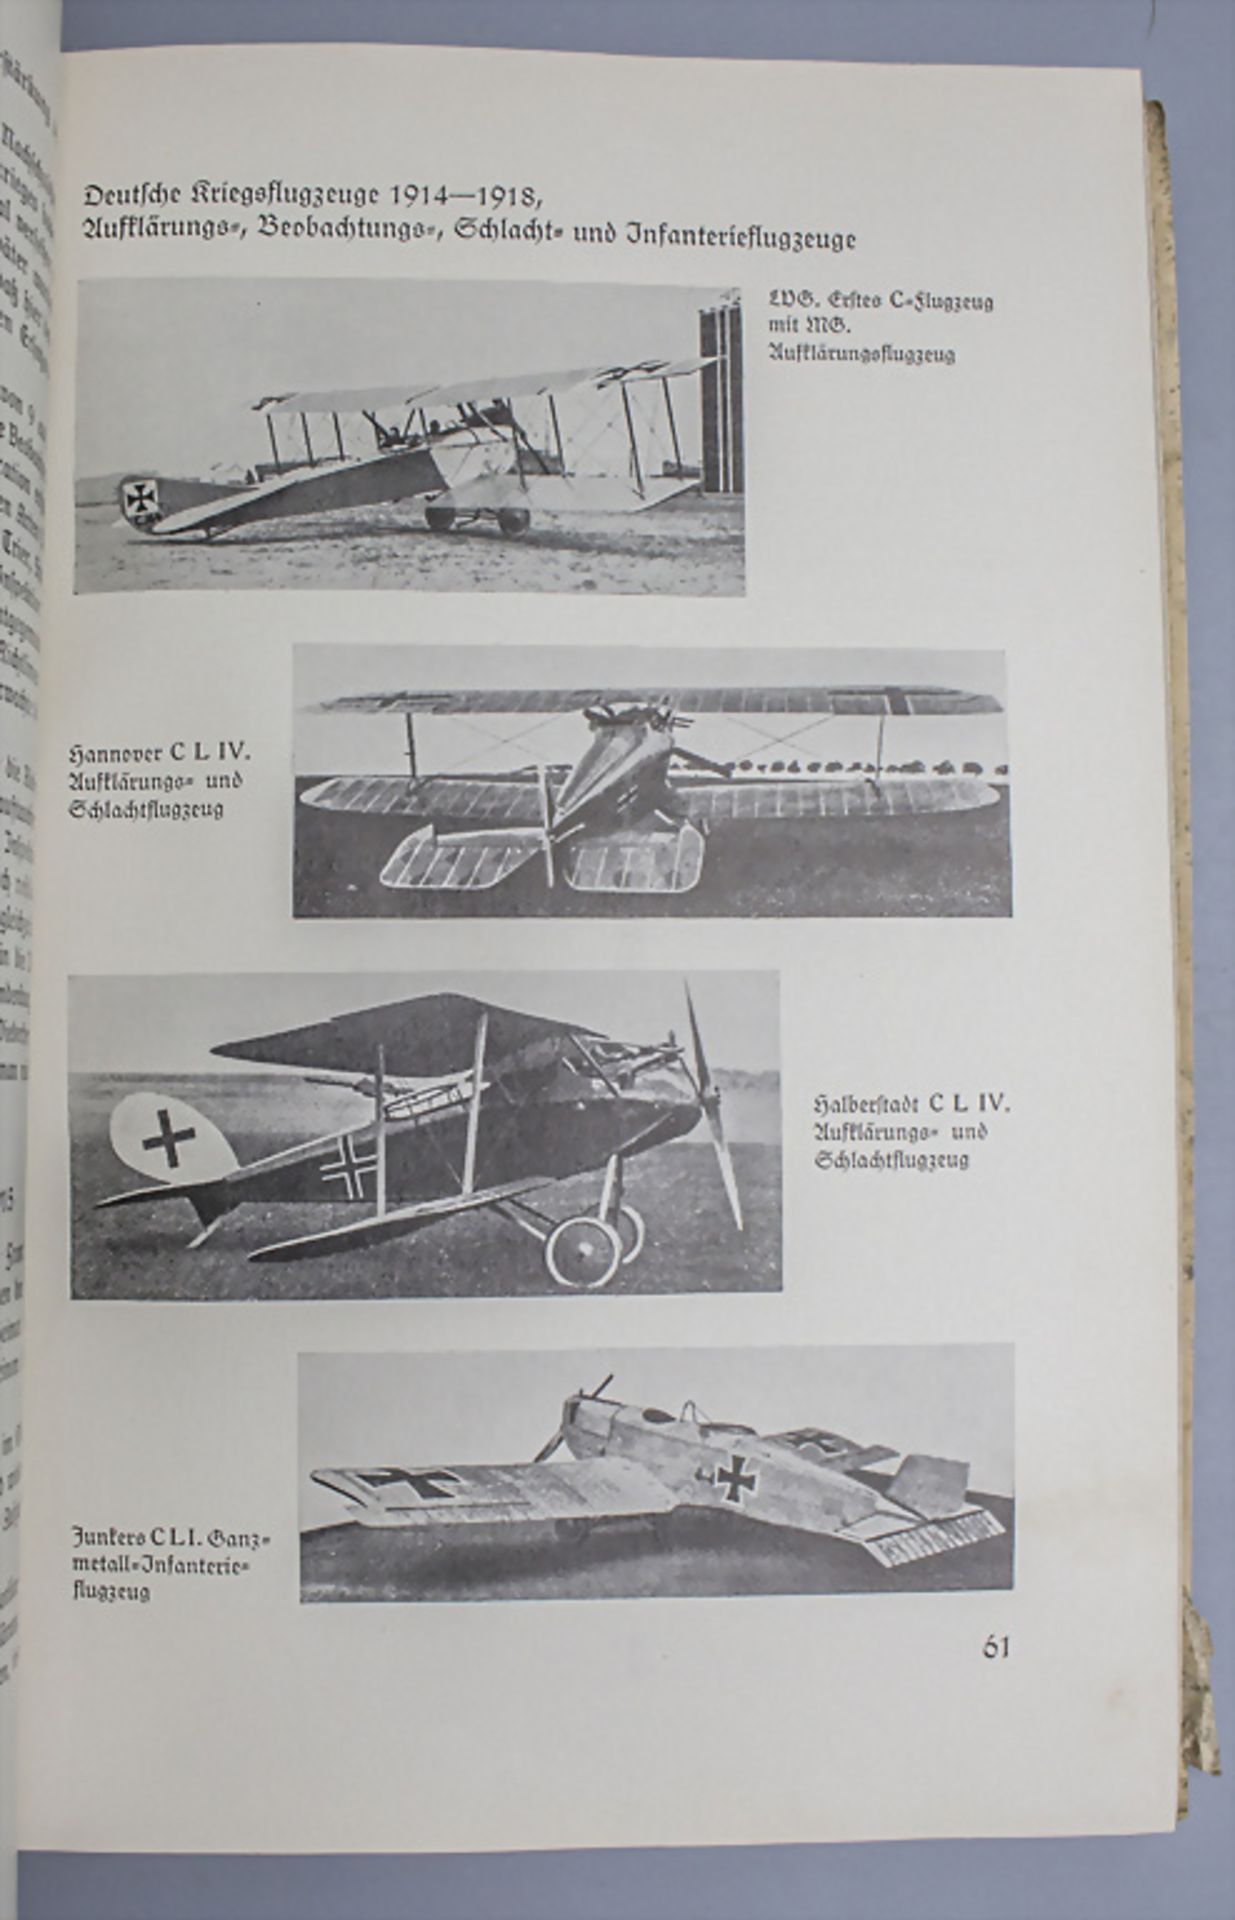 Geschichte der Luftwaffe / History of the German air force, Hilmer Freiherr von Bülow, 1934 - Bild 5 aus 5